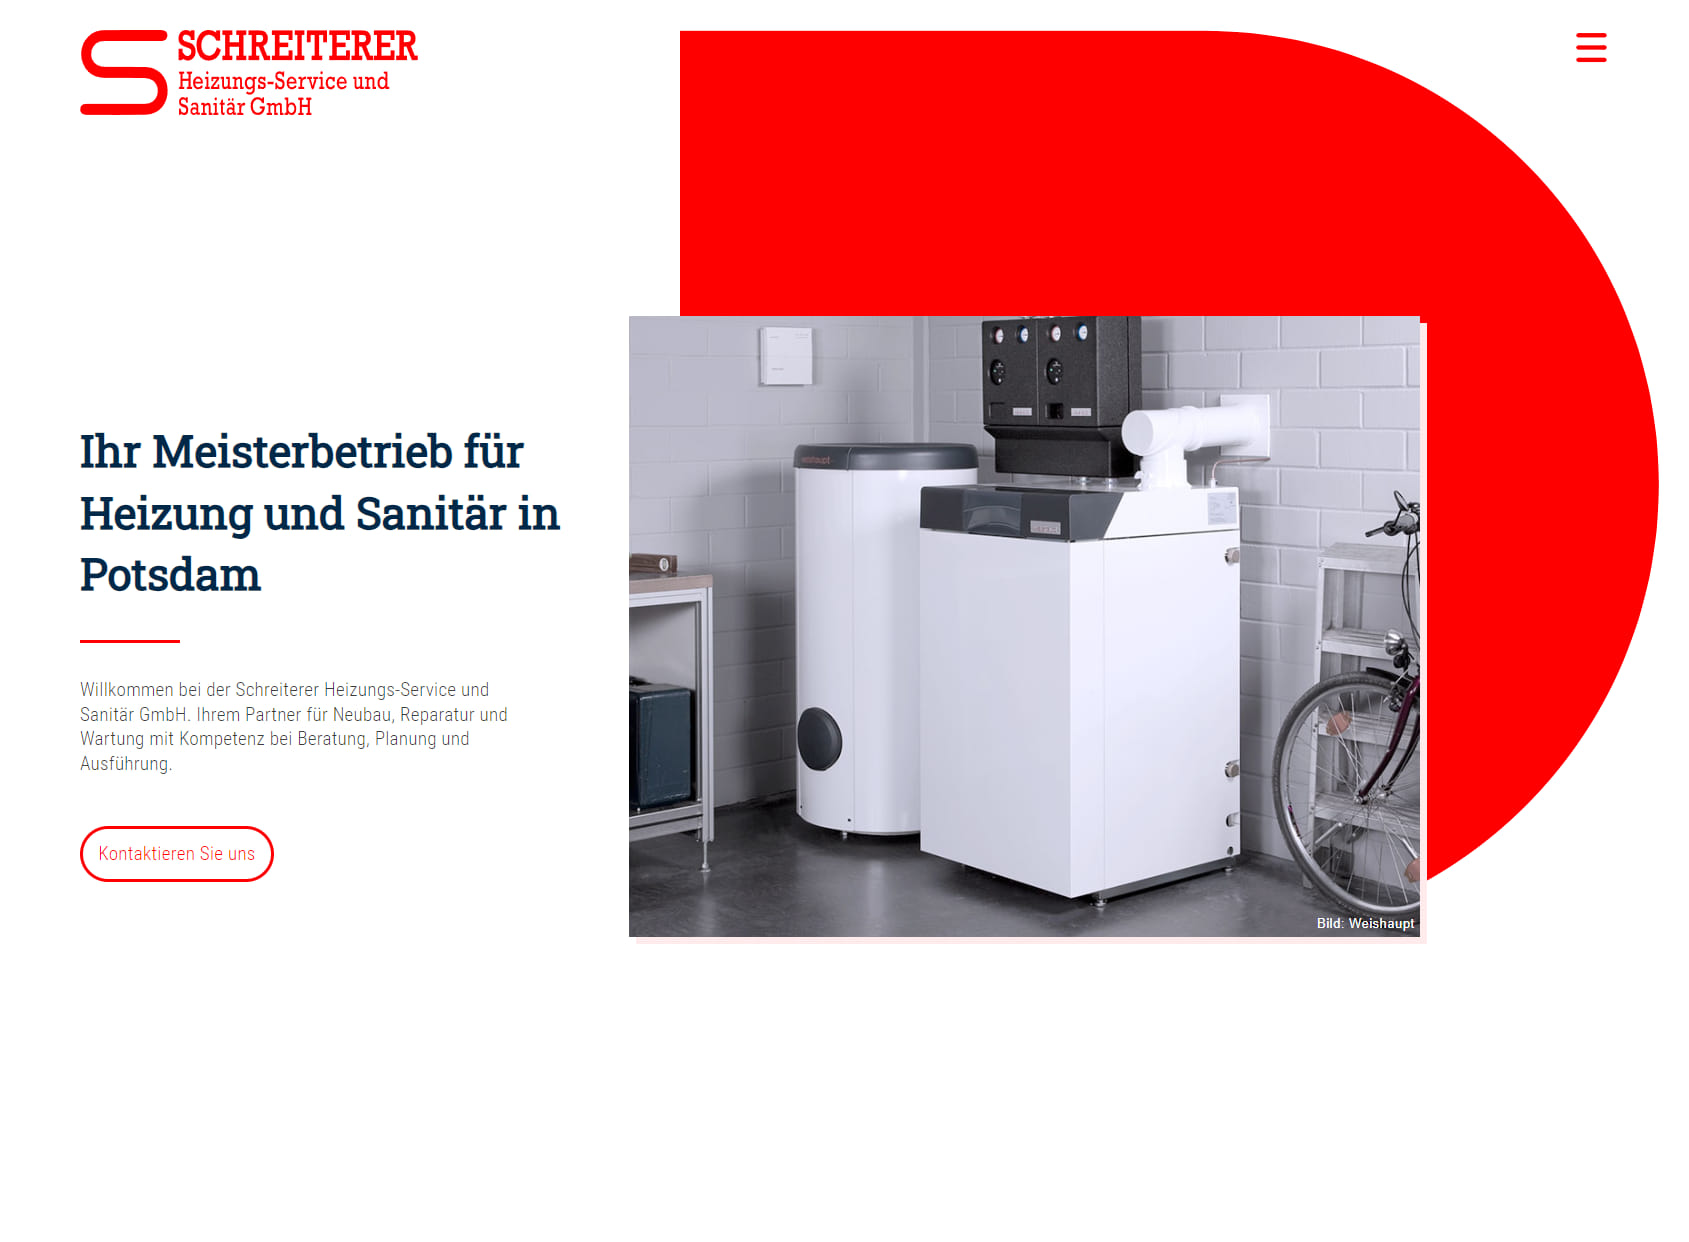 Schreiterer Heizung-Service & Sanitär GmbH